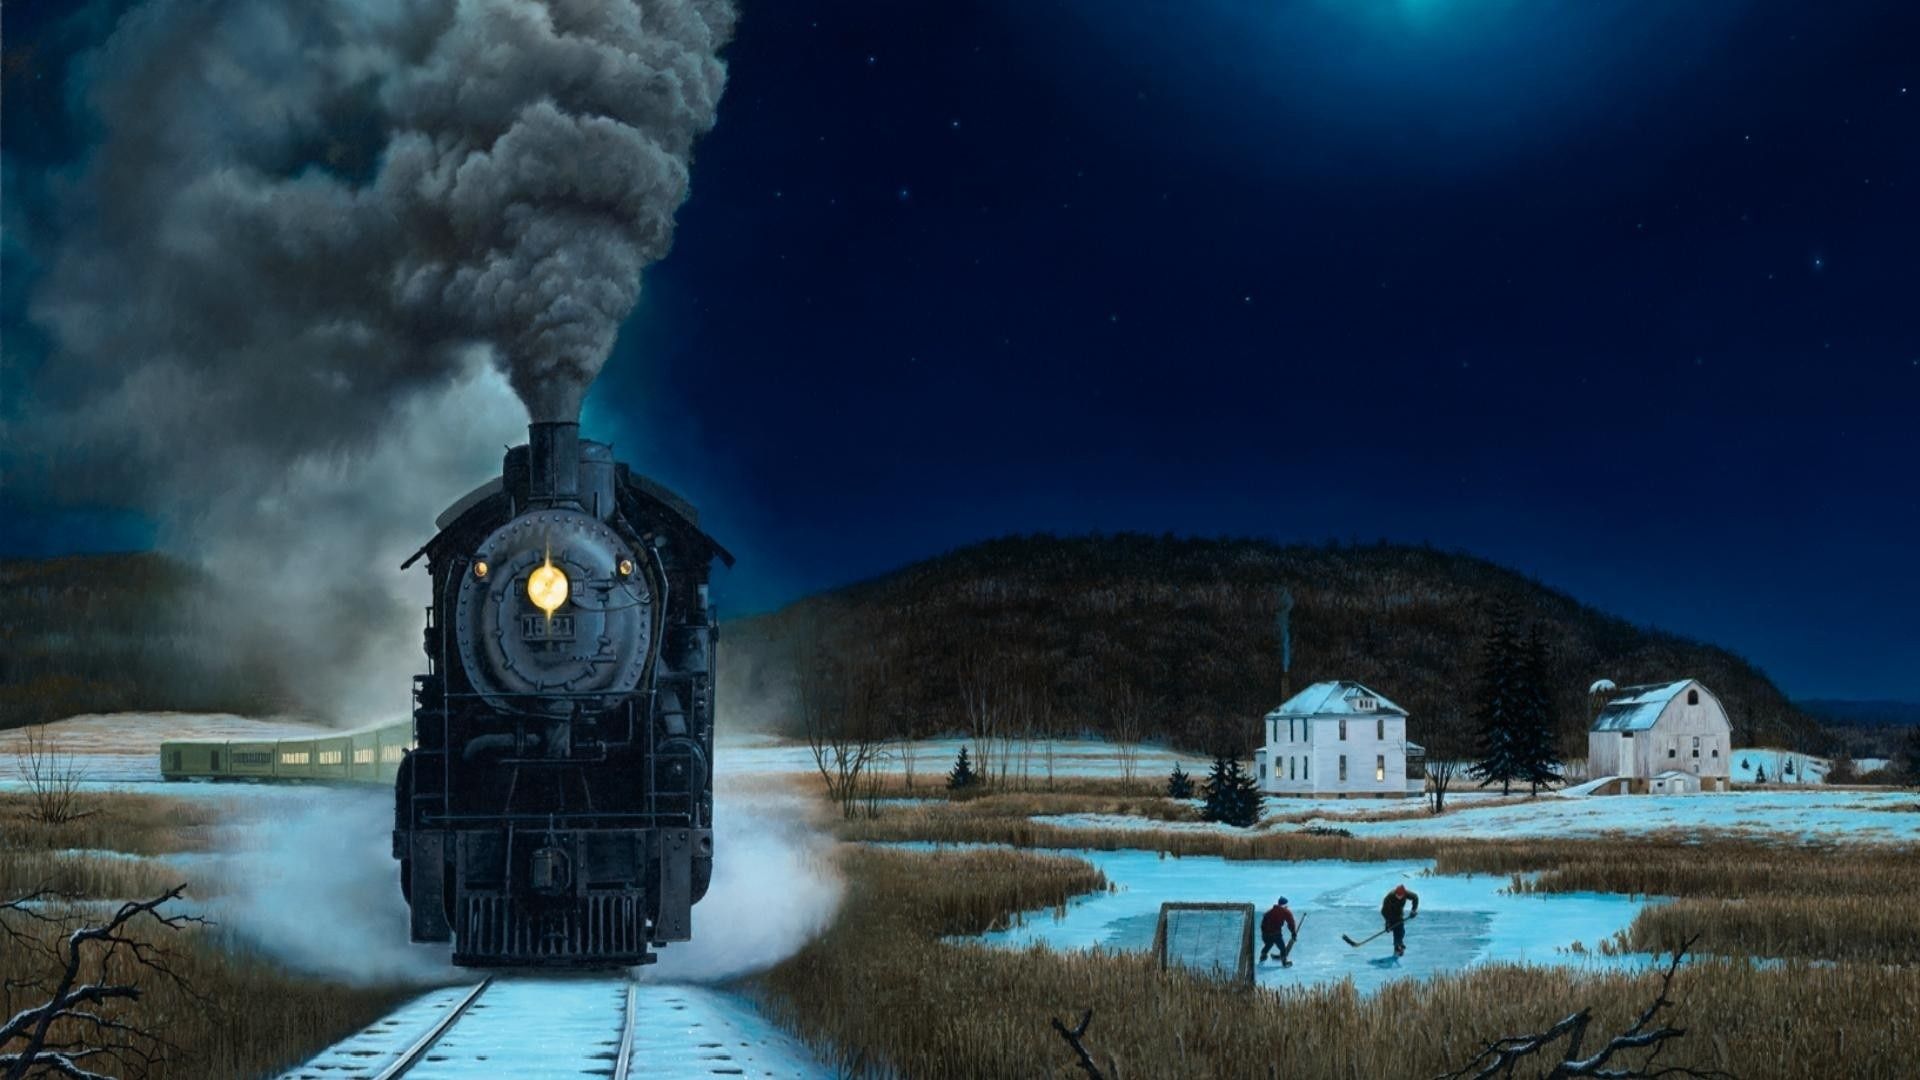 Wallpaper. Railway. photo. picture. train, snow, winter, railroad